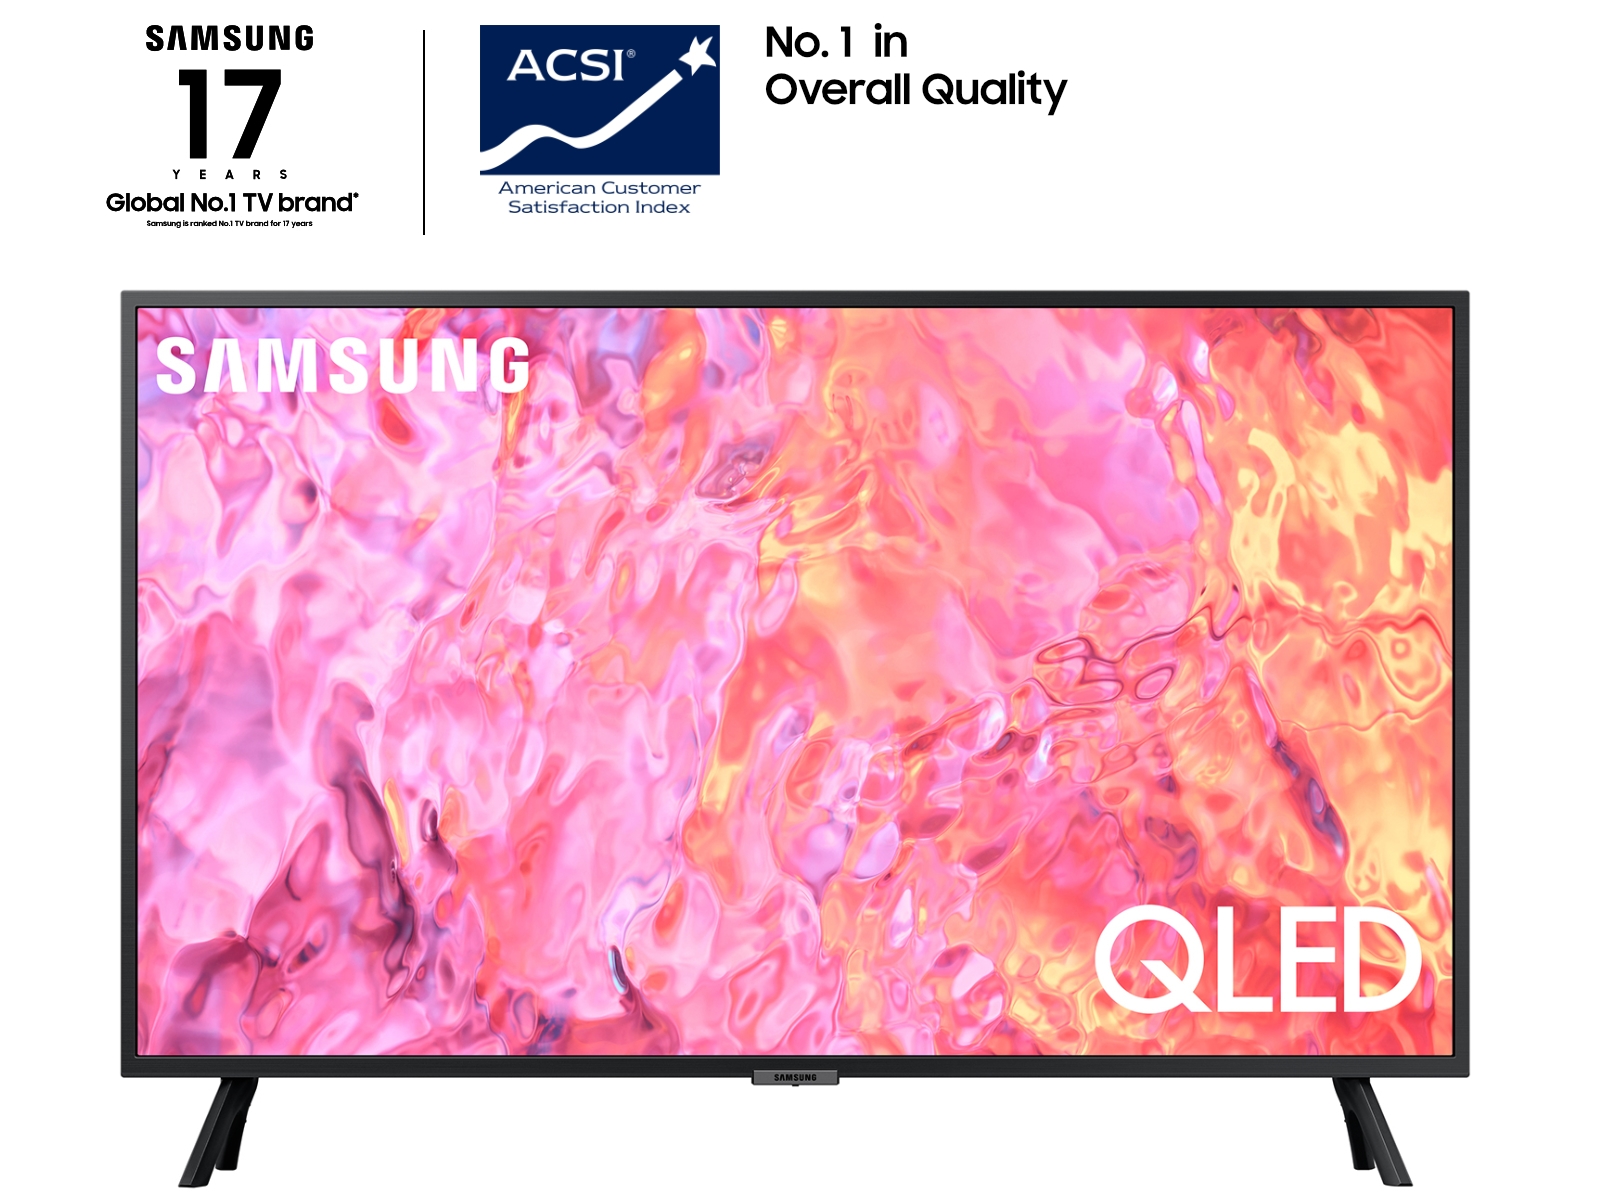 Nuevo televisor QLED Q80C de 98 pulgadas - Noticias de Juegos ##